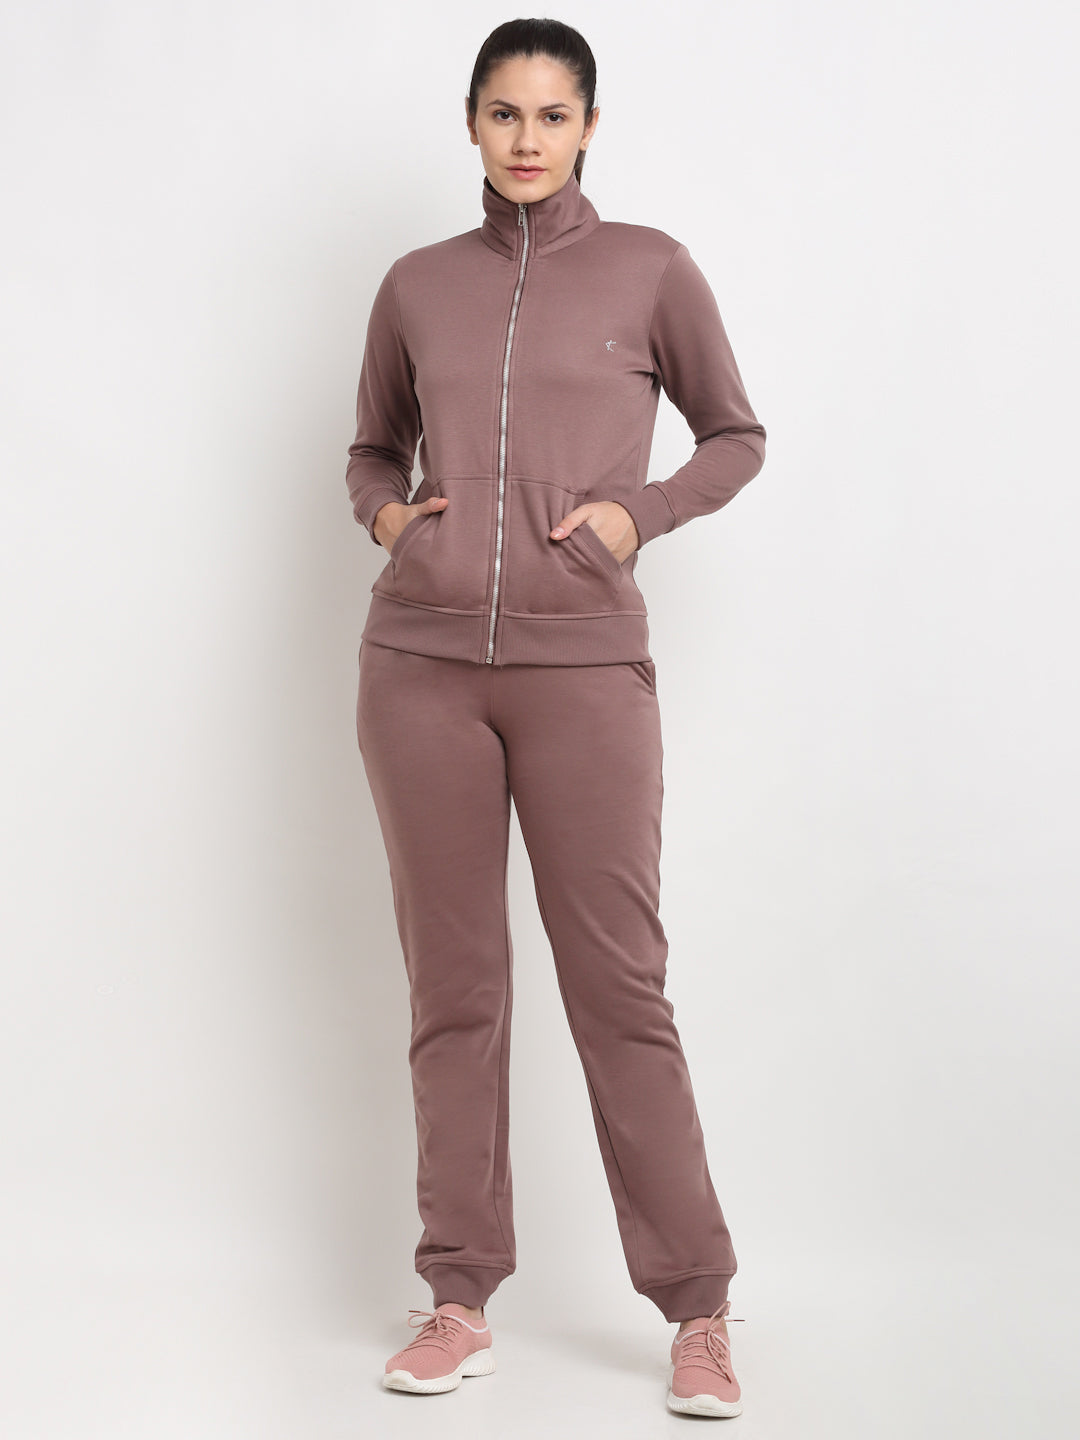 MJKAW21455C-Fleece with Fur Inside-Winterwear